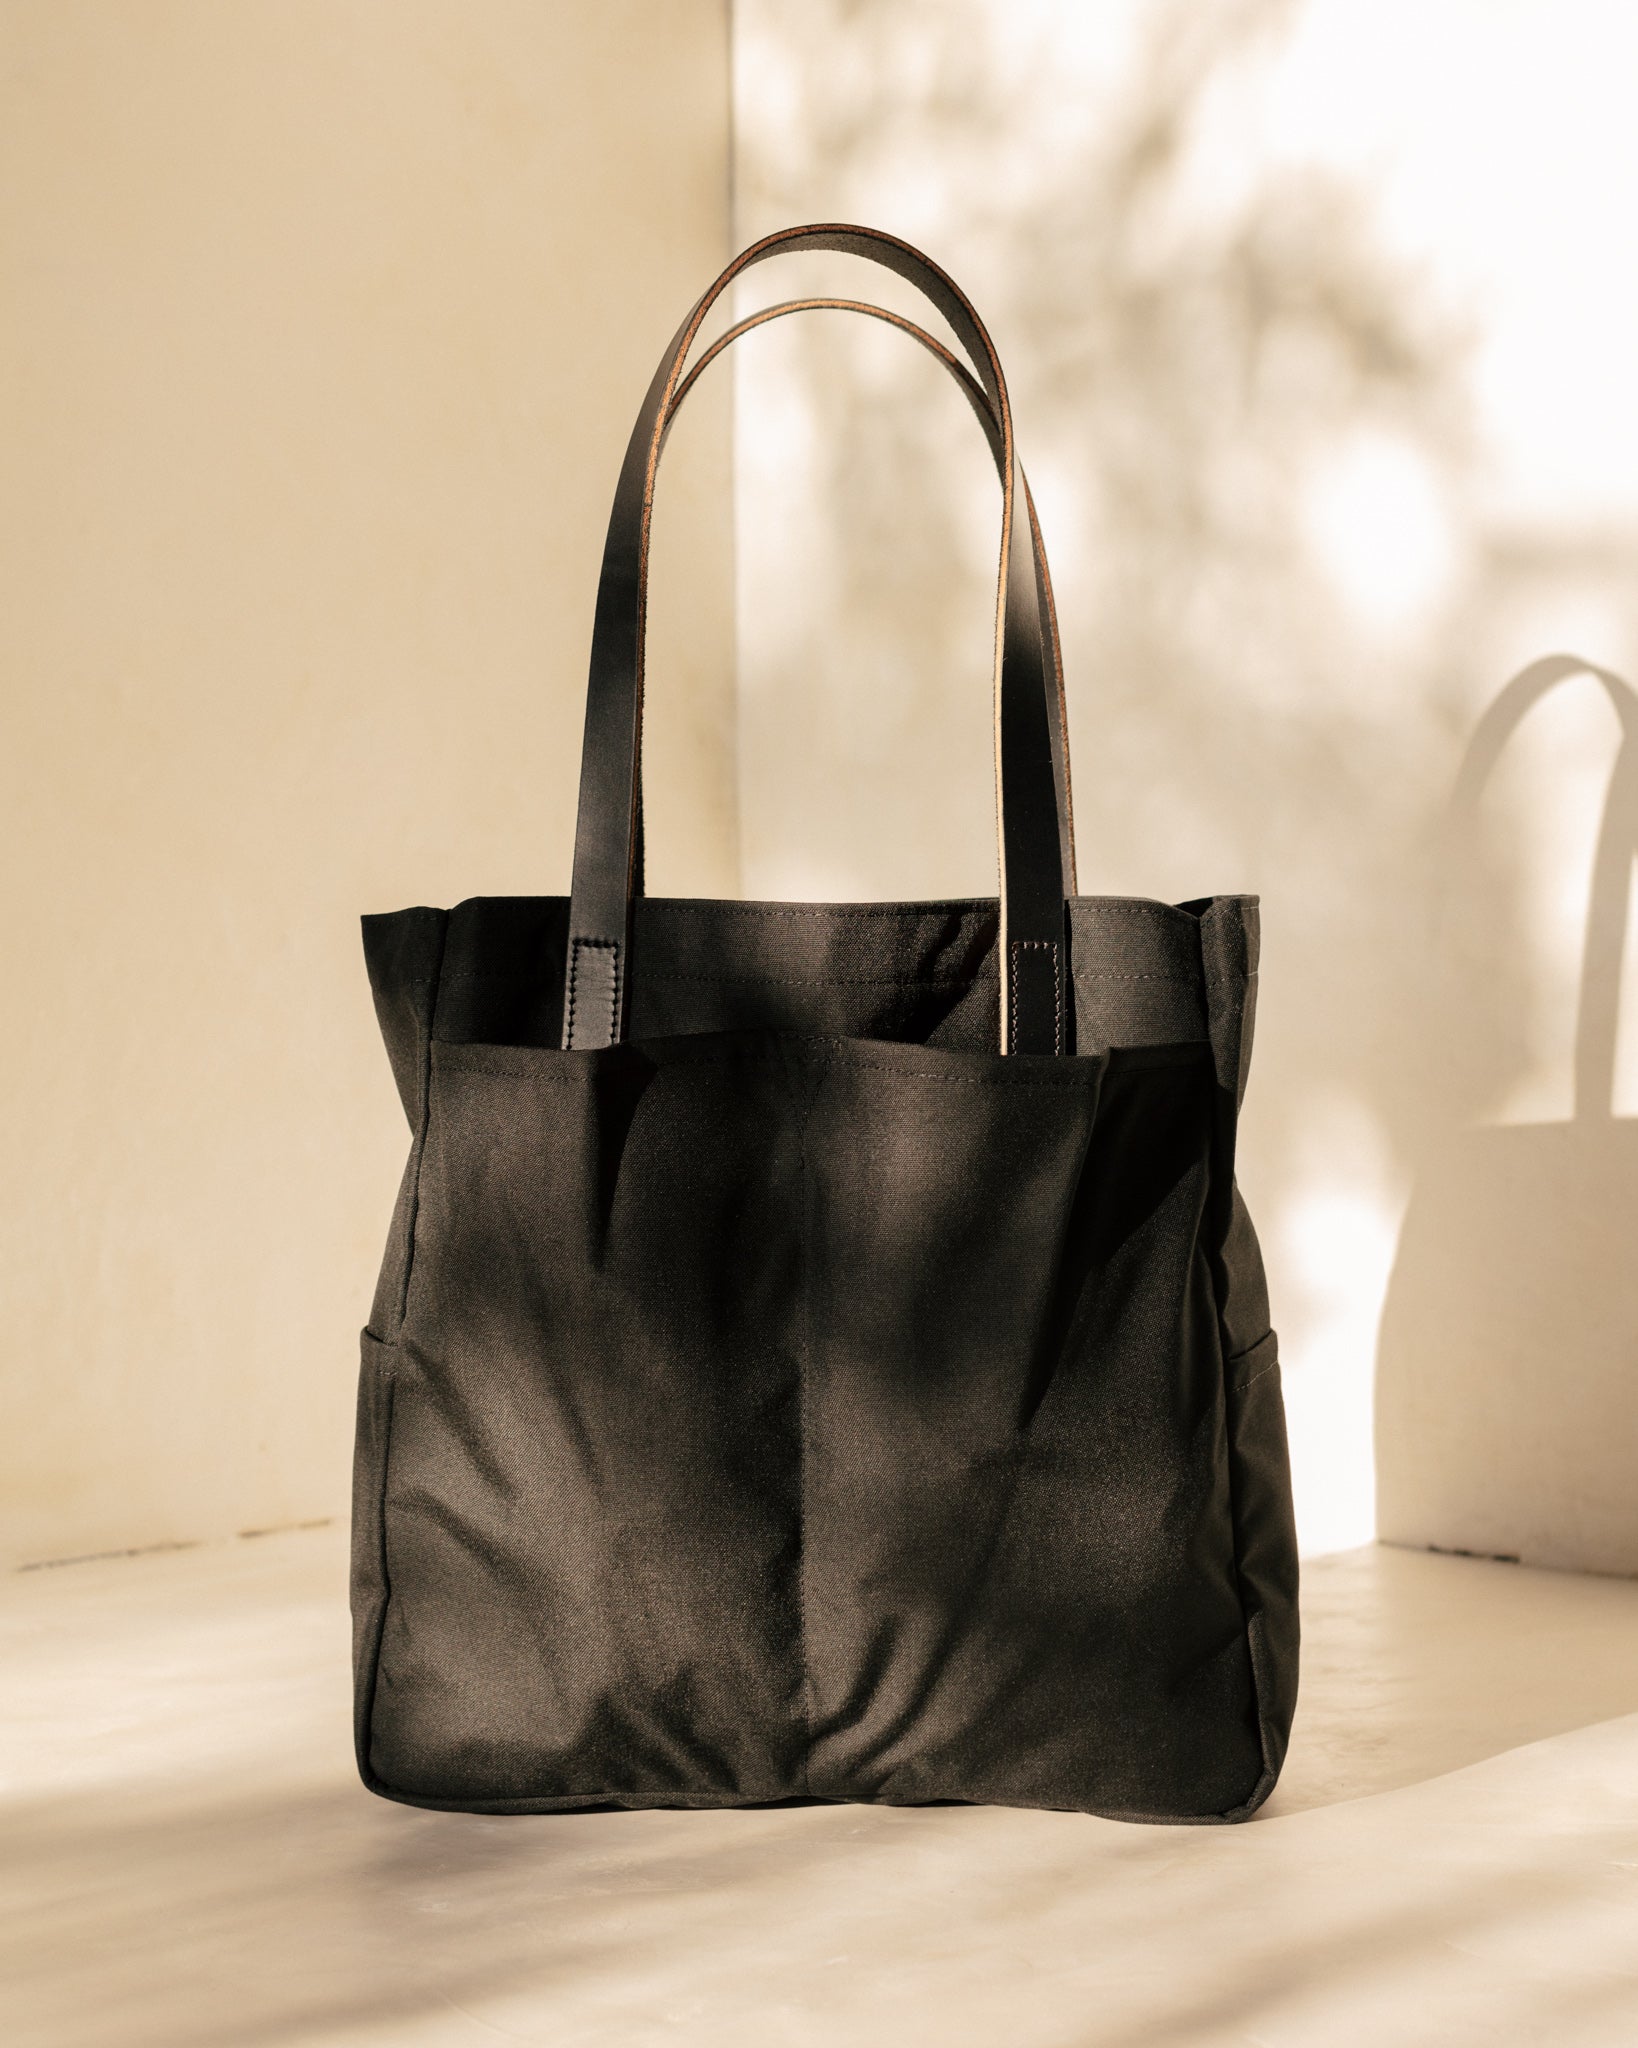 Women's Large Capacity Nylon Hobo Bag